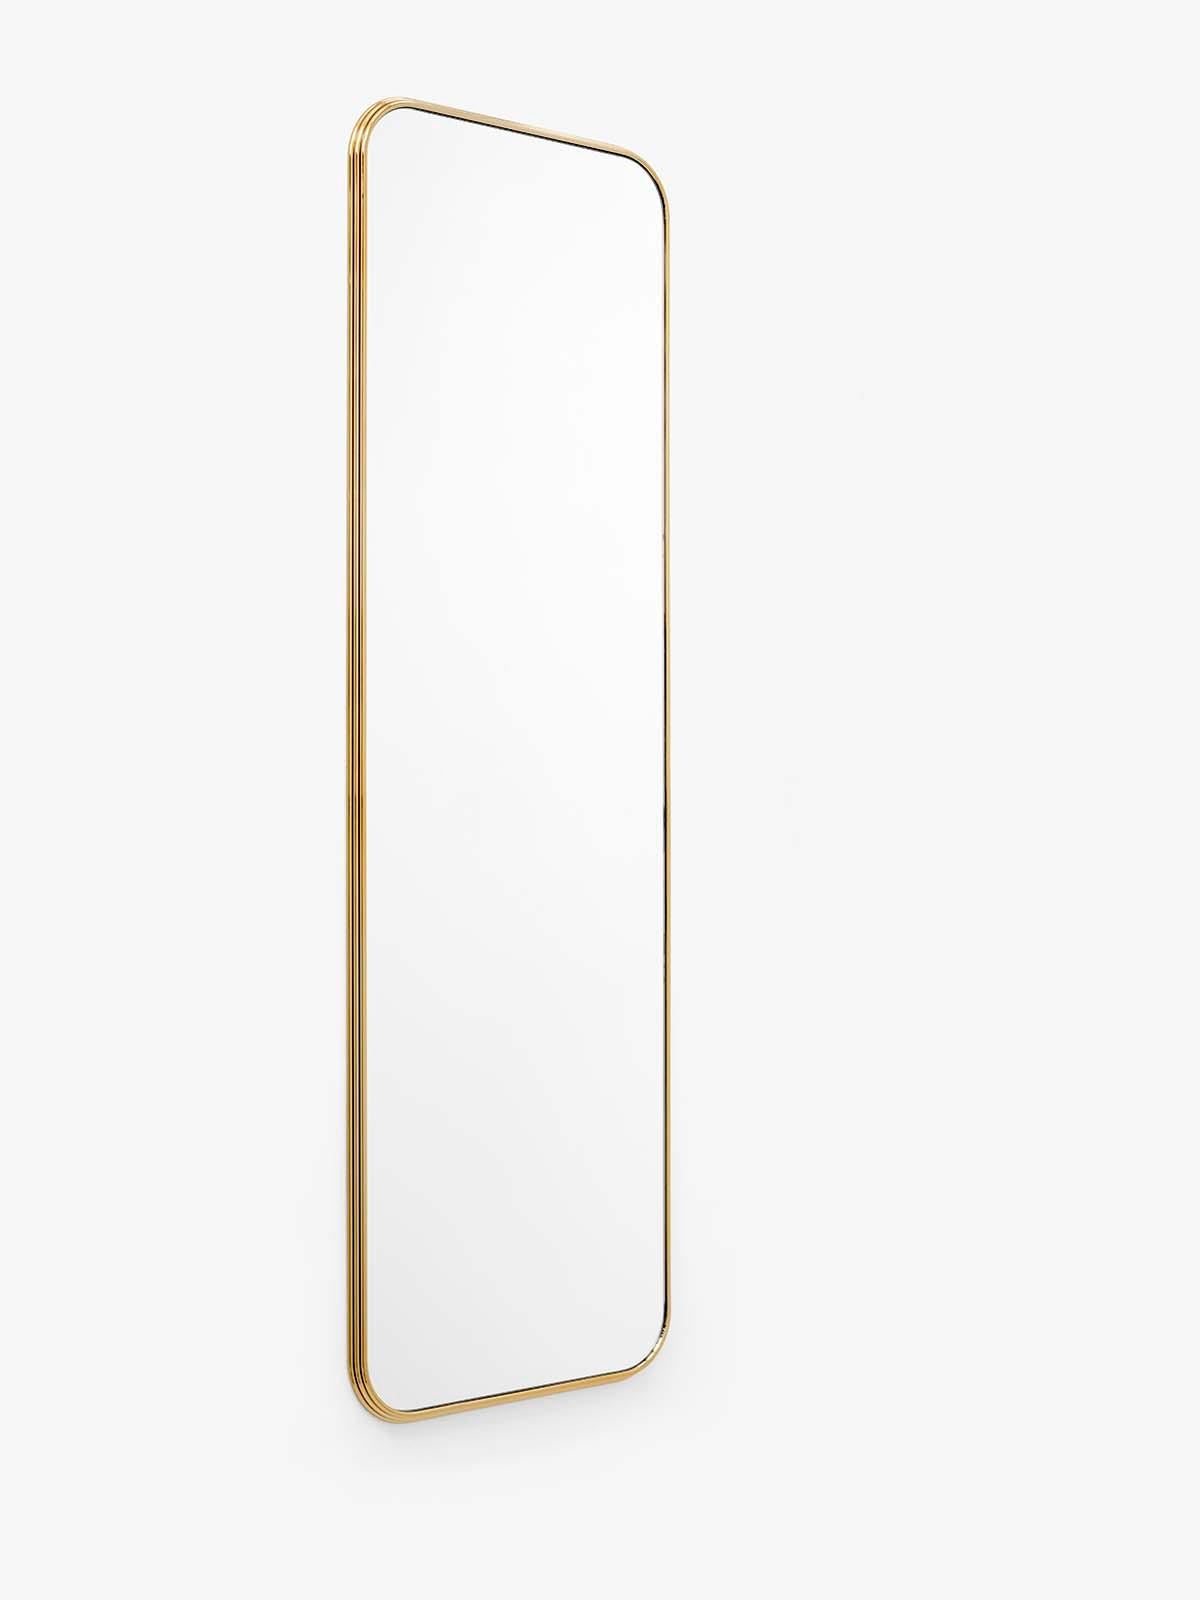 Sillon Brass Mirror Sh7 by Sebastian Herkner for &tradition For Sale